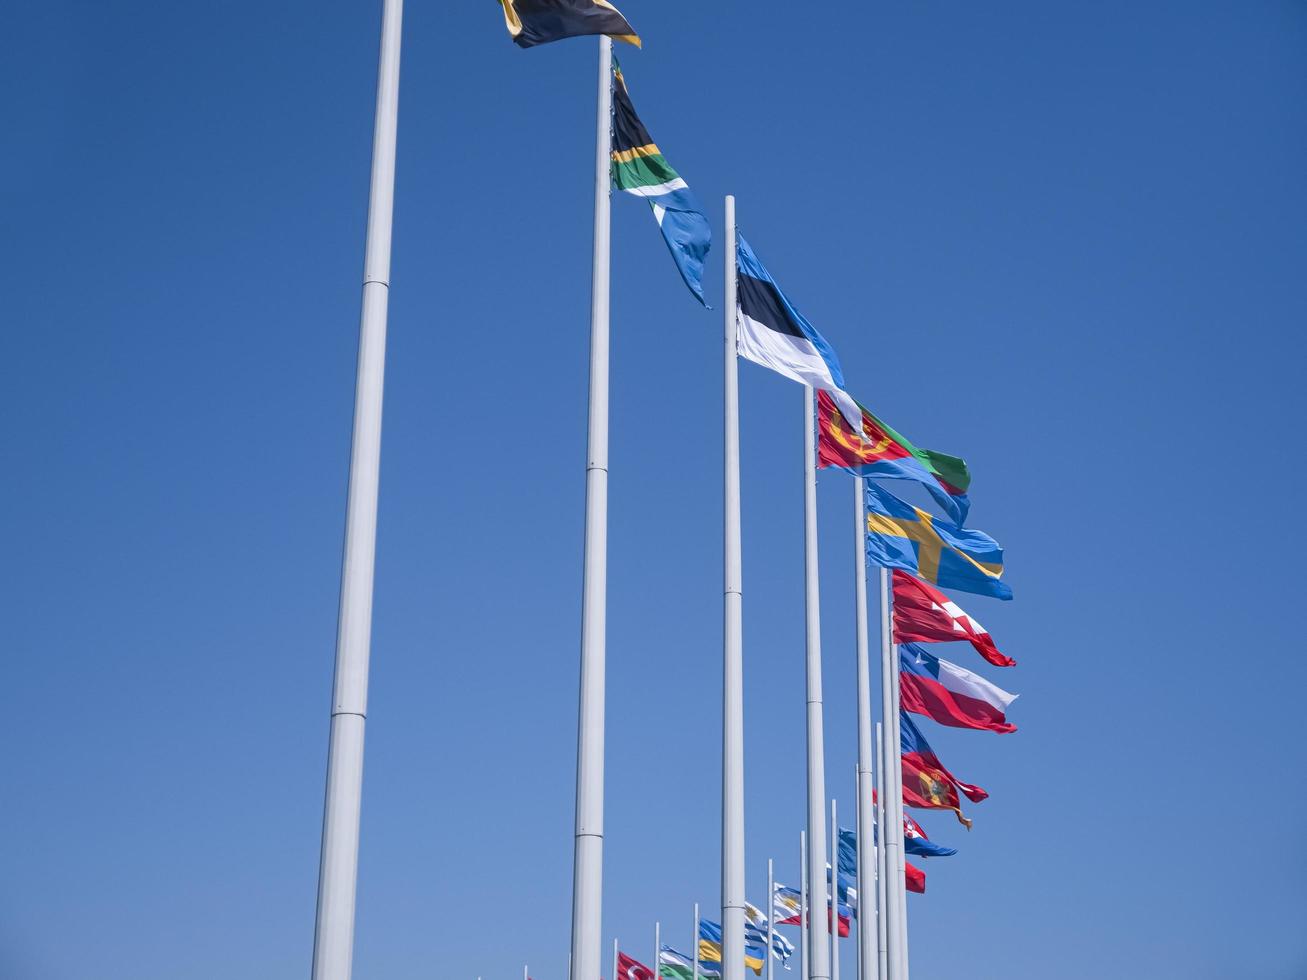 adler city, rusia - agosto de 2019, banderas de los países del mundo en mástiles en el parque olímpico foto